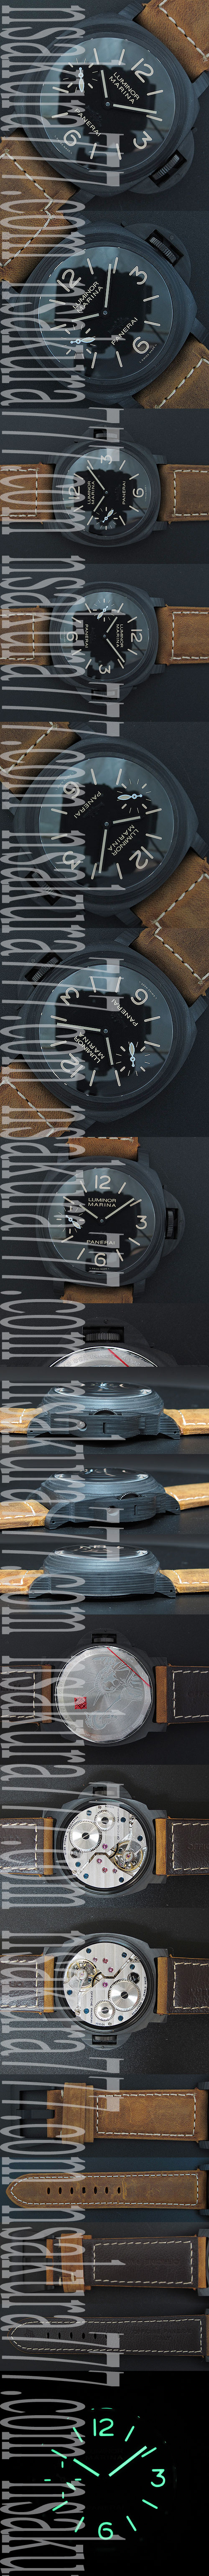 スーパーコピー時計パネライ ルミノール マリーナPAM00417 ポジド　カーボン - ウインドウを閉じる